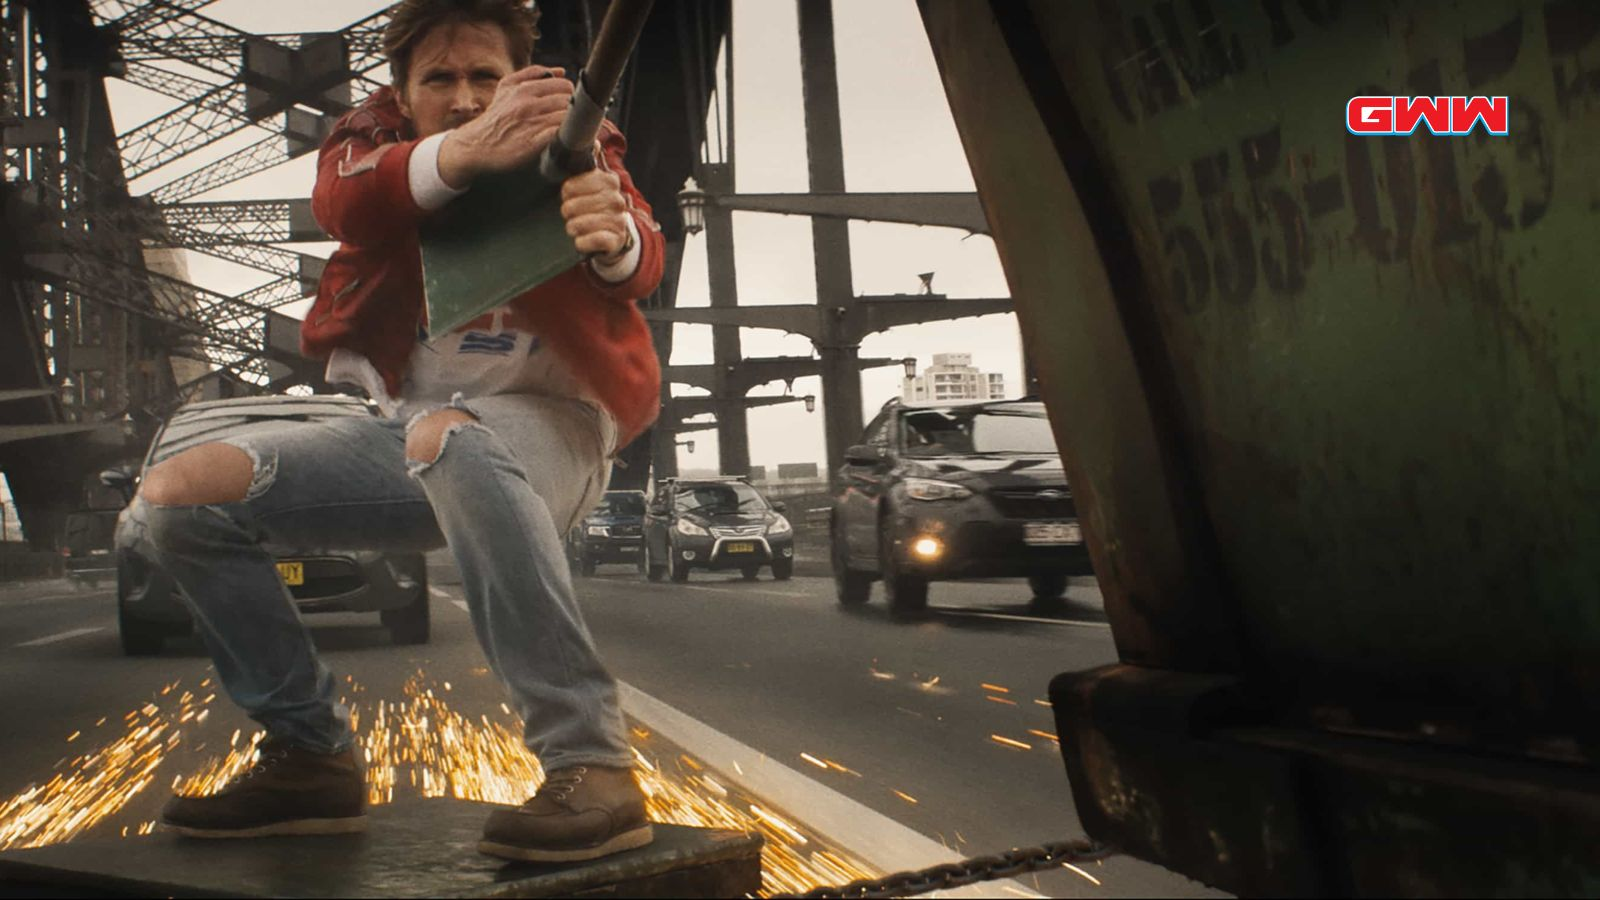 Doble de acción en un puente con chispas en el tráiler de la película "The Fall Guy"